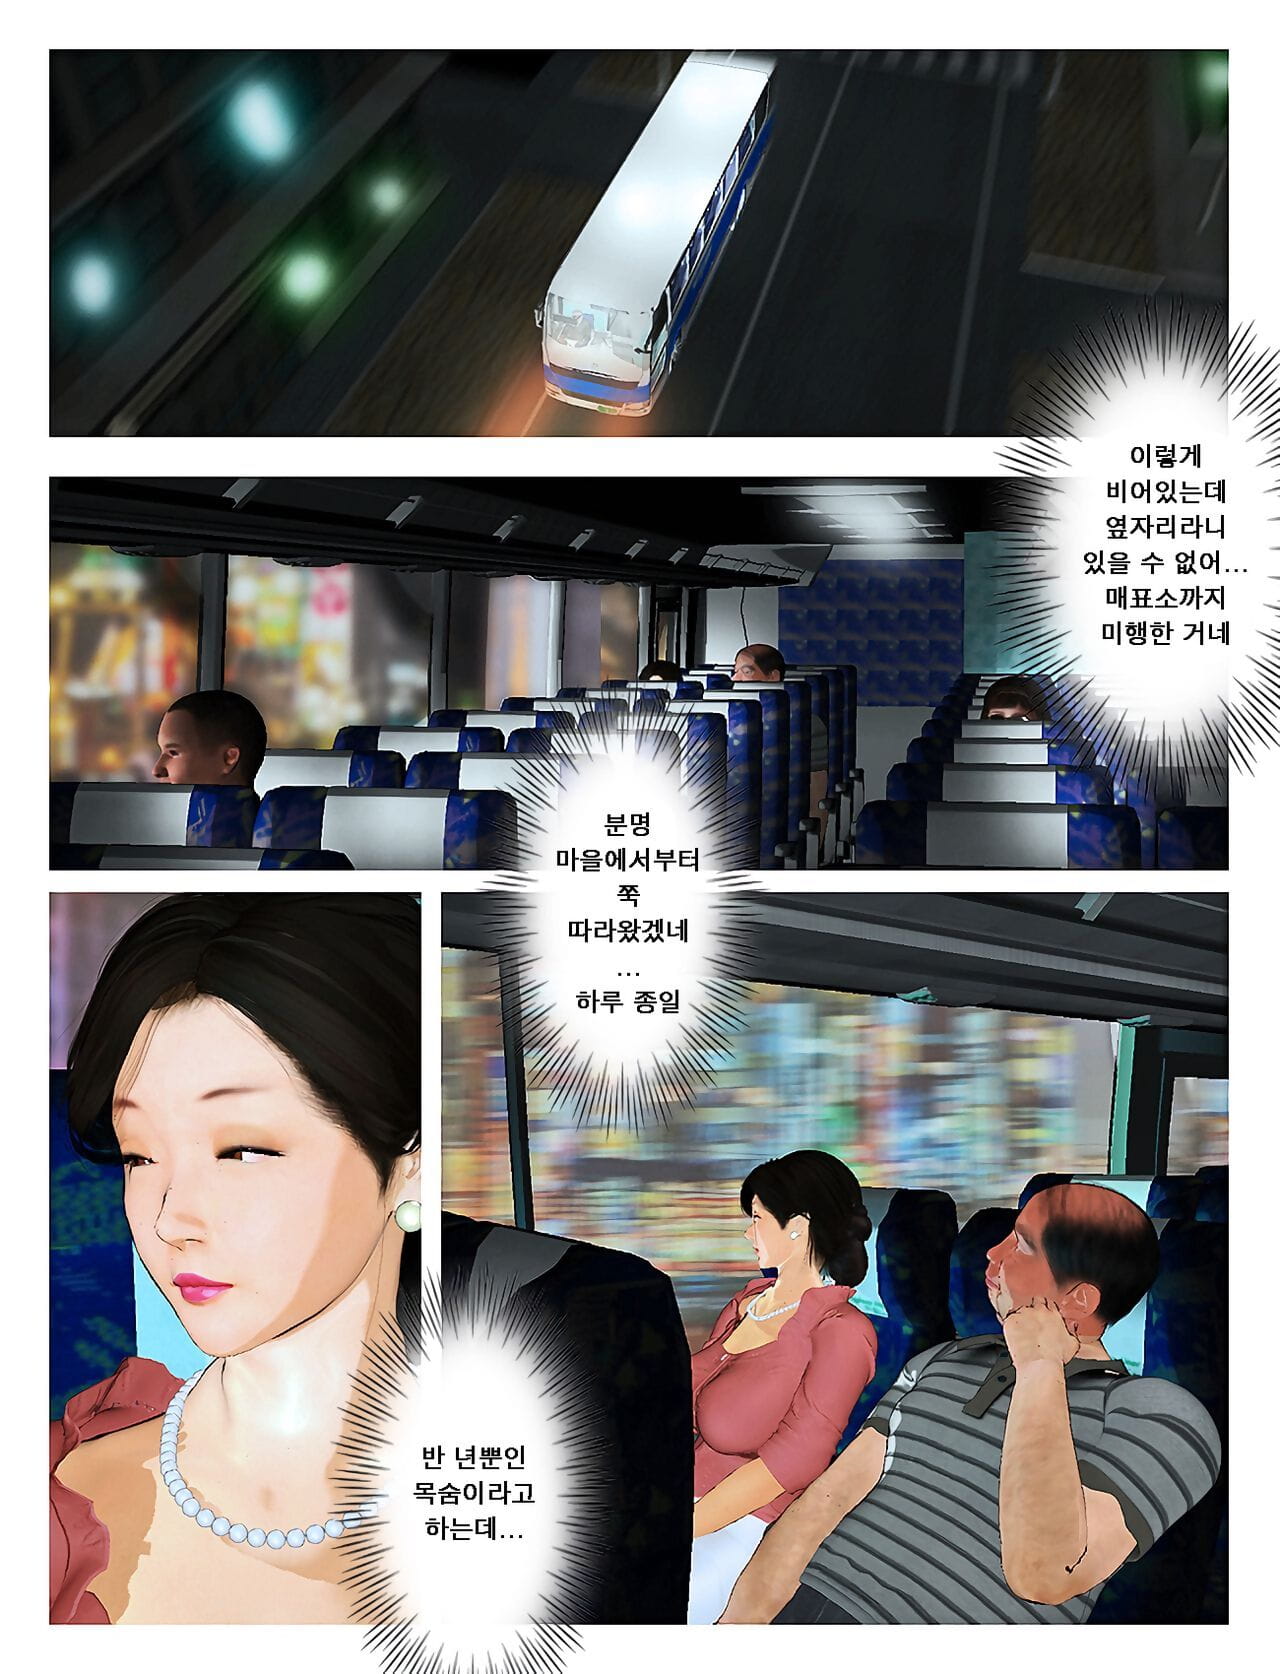 tuer l' le roi Kyou pas de misako san 2019:2 오늘의 미사코씨 2019:2 Coréen PARTIE 2 page 1